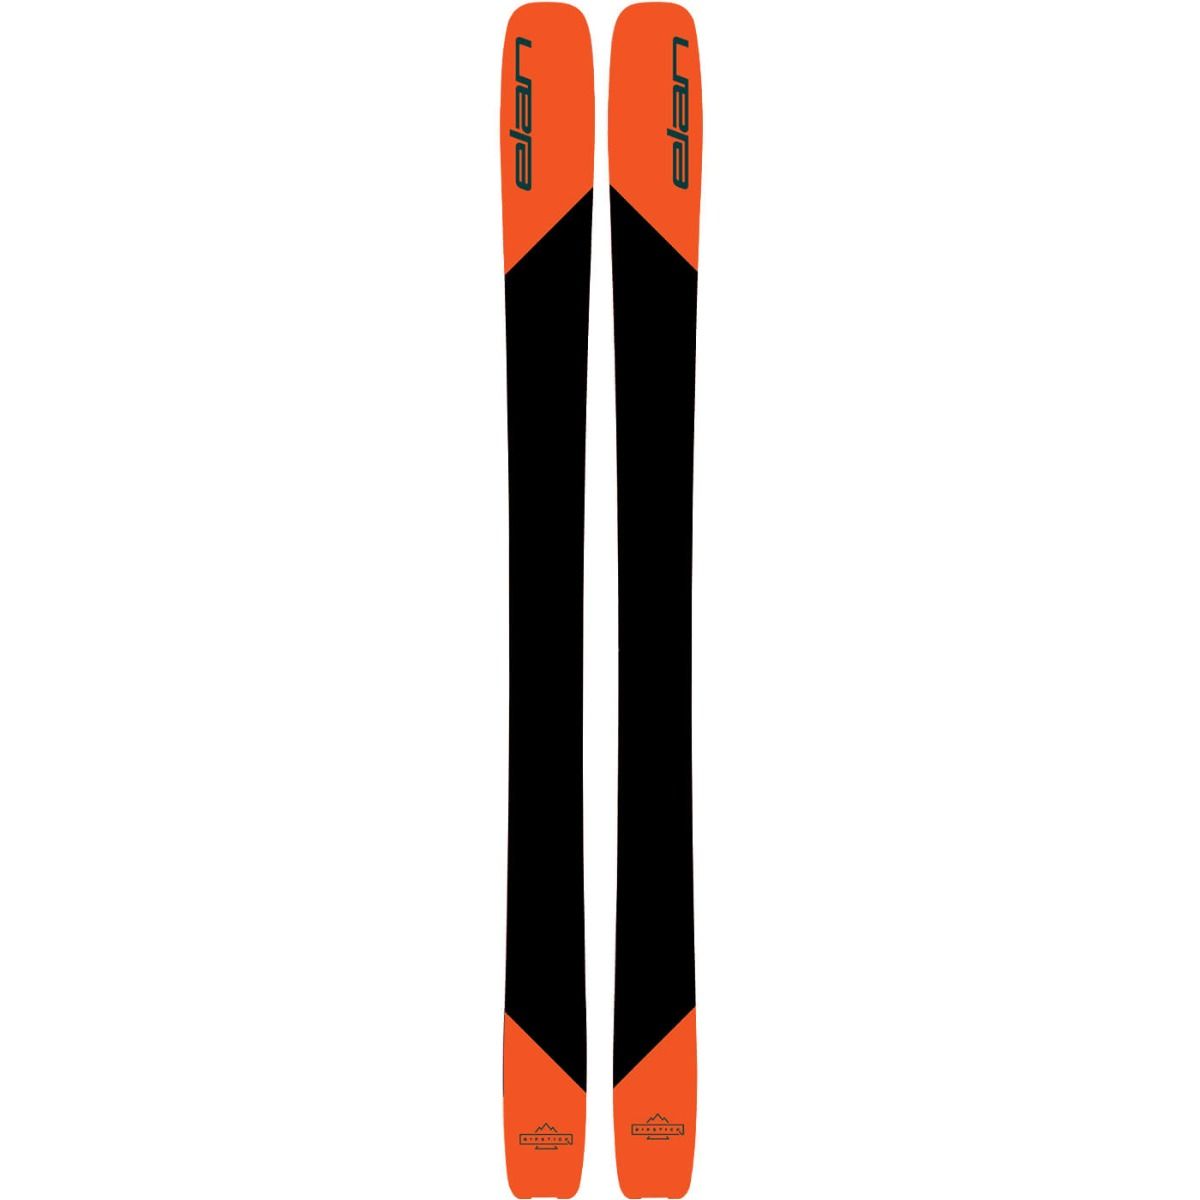 Elan Ripstick 116 - Ski - 2022